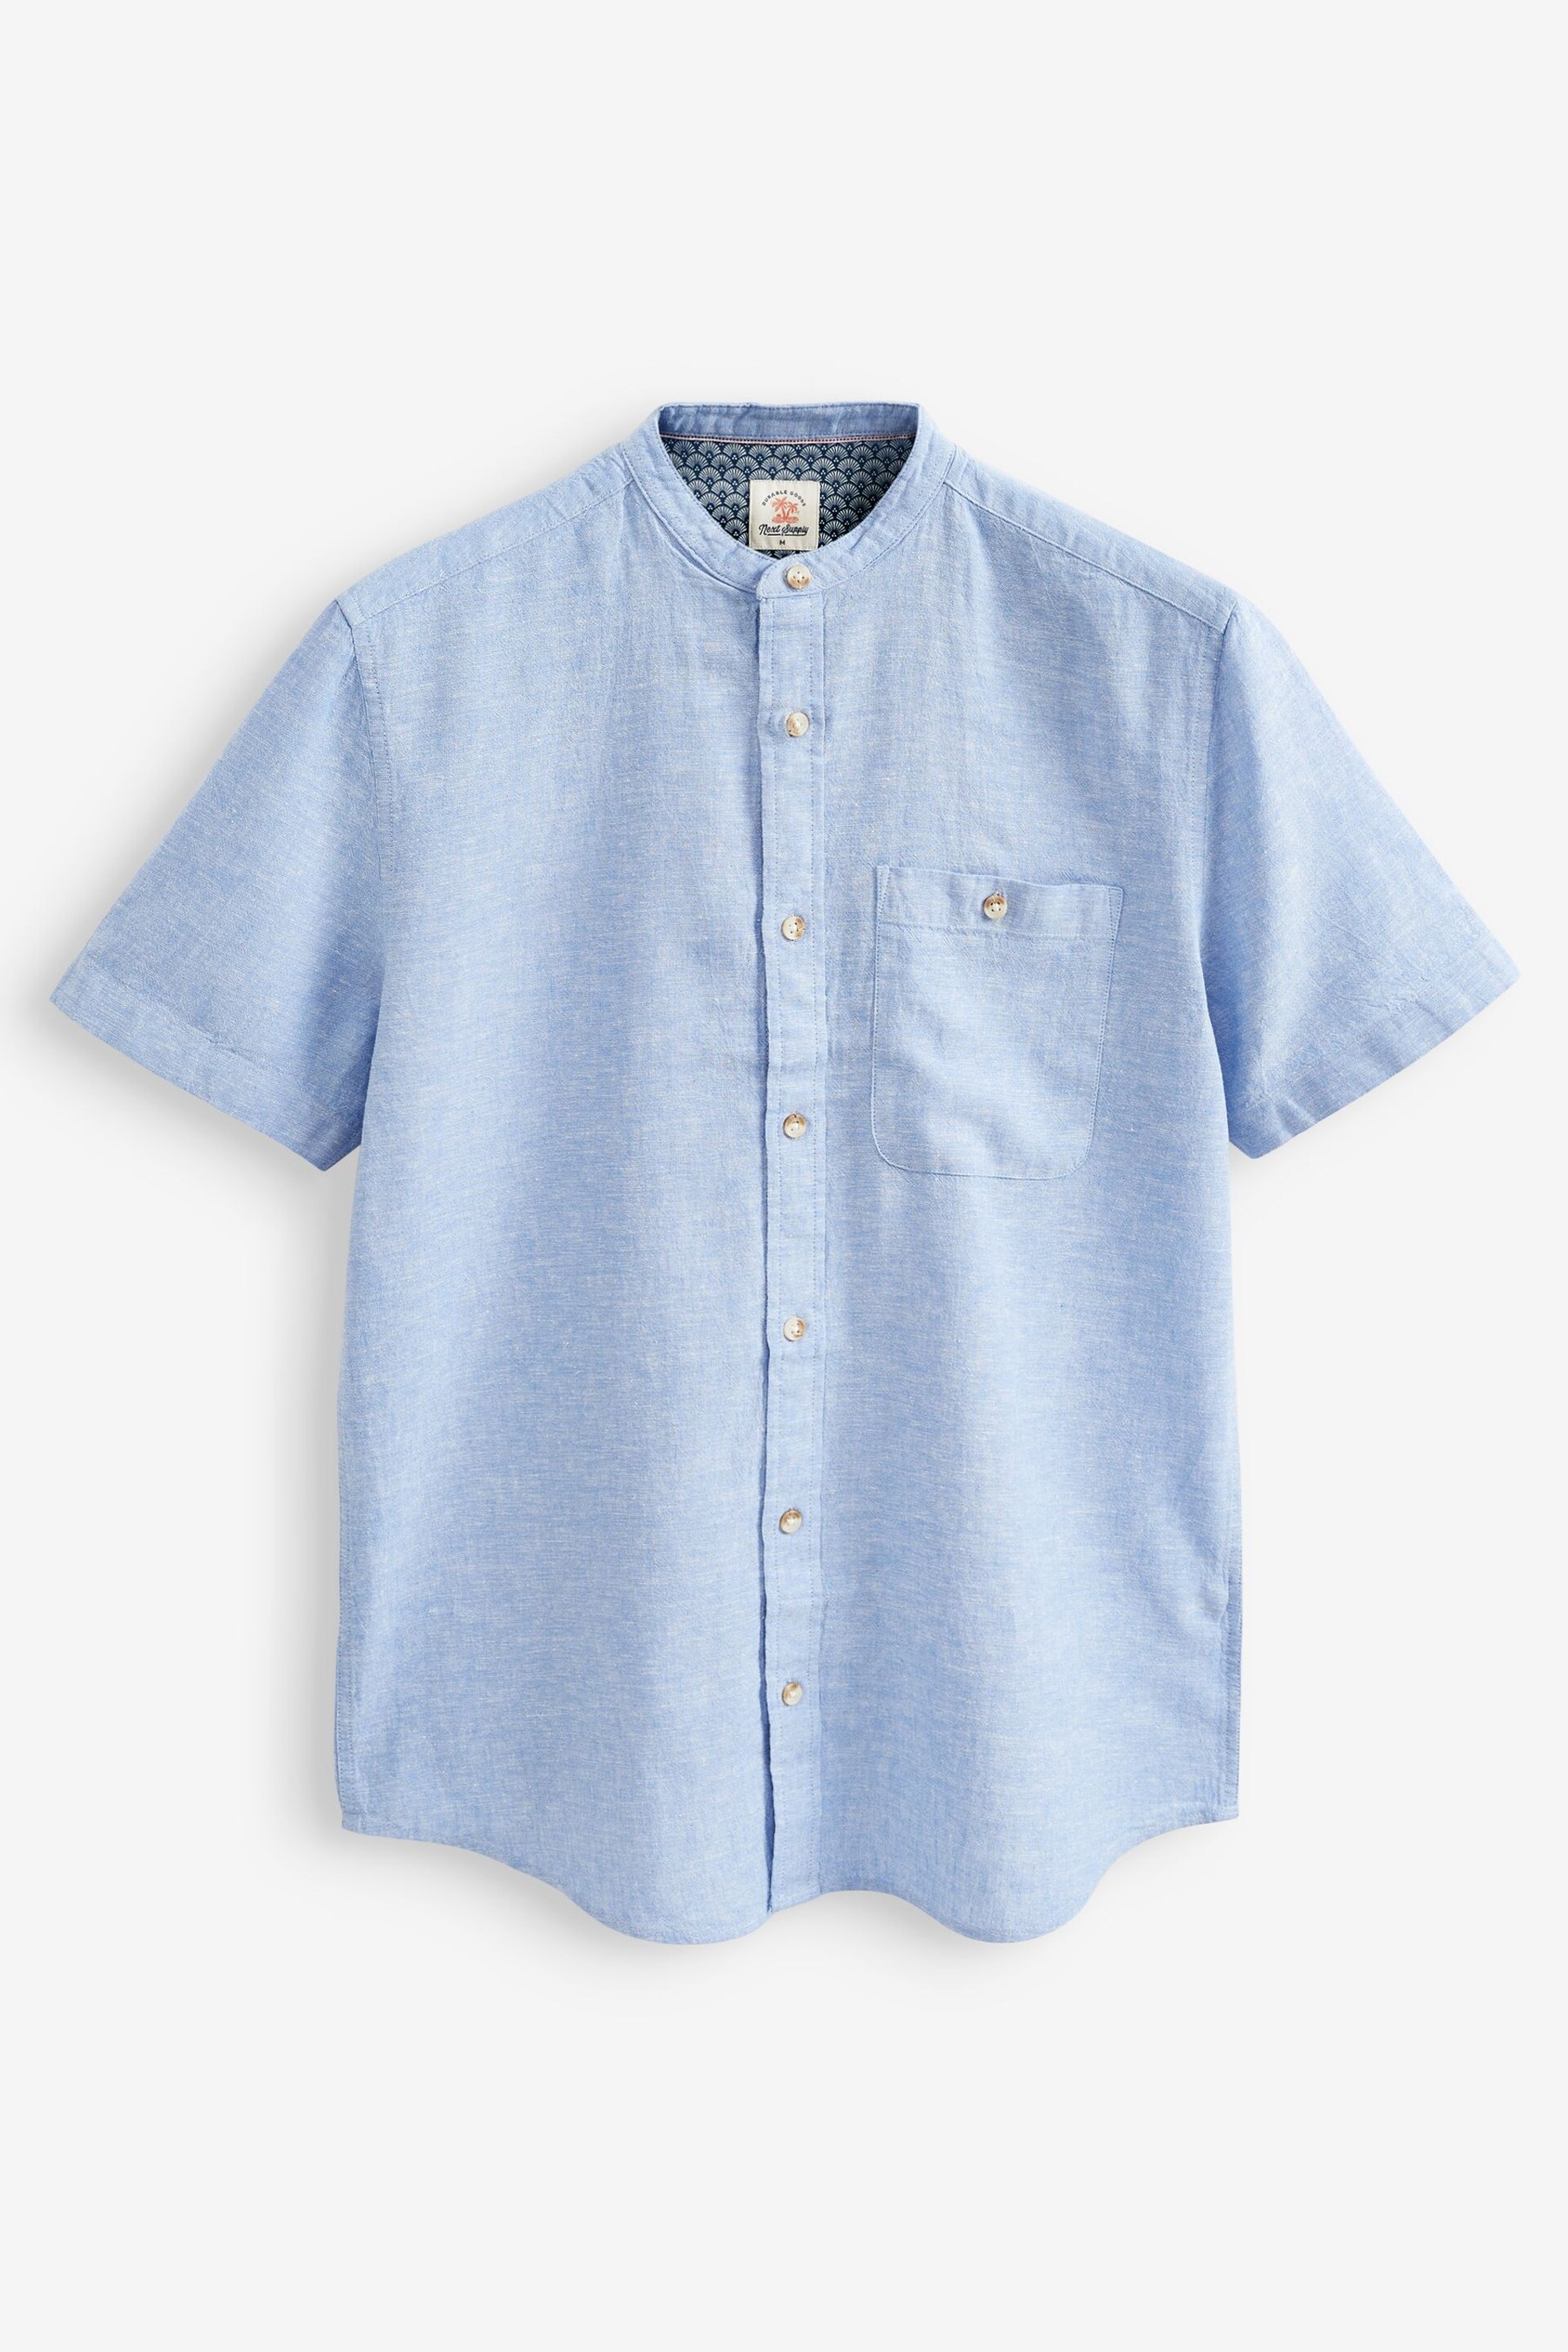 Light Blue Grandad Collar Linen Blend Short Sleeve Shirt - Image 4 of 5